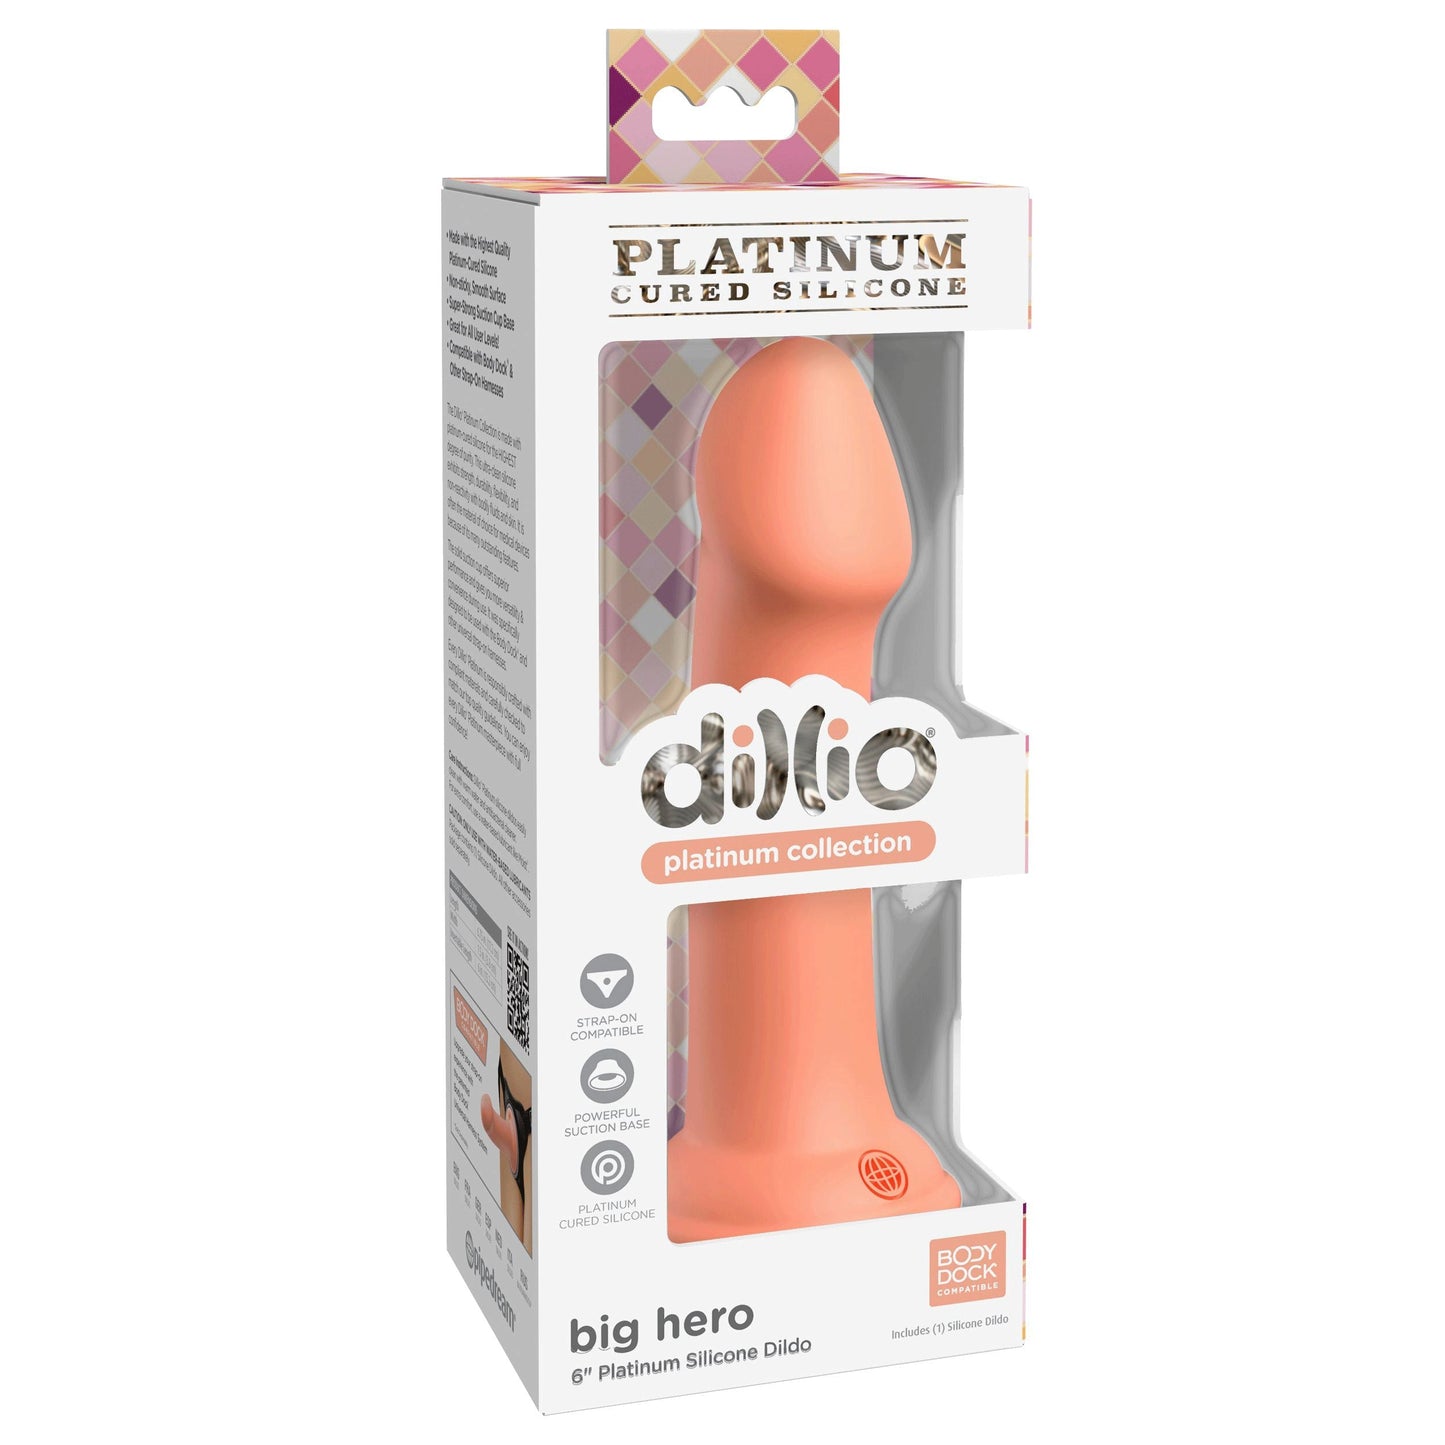 Dillio Platinum - Big Hero 6 Inch Dildo - Peach